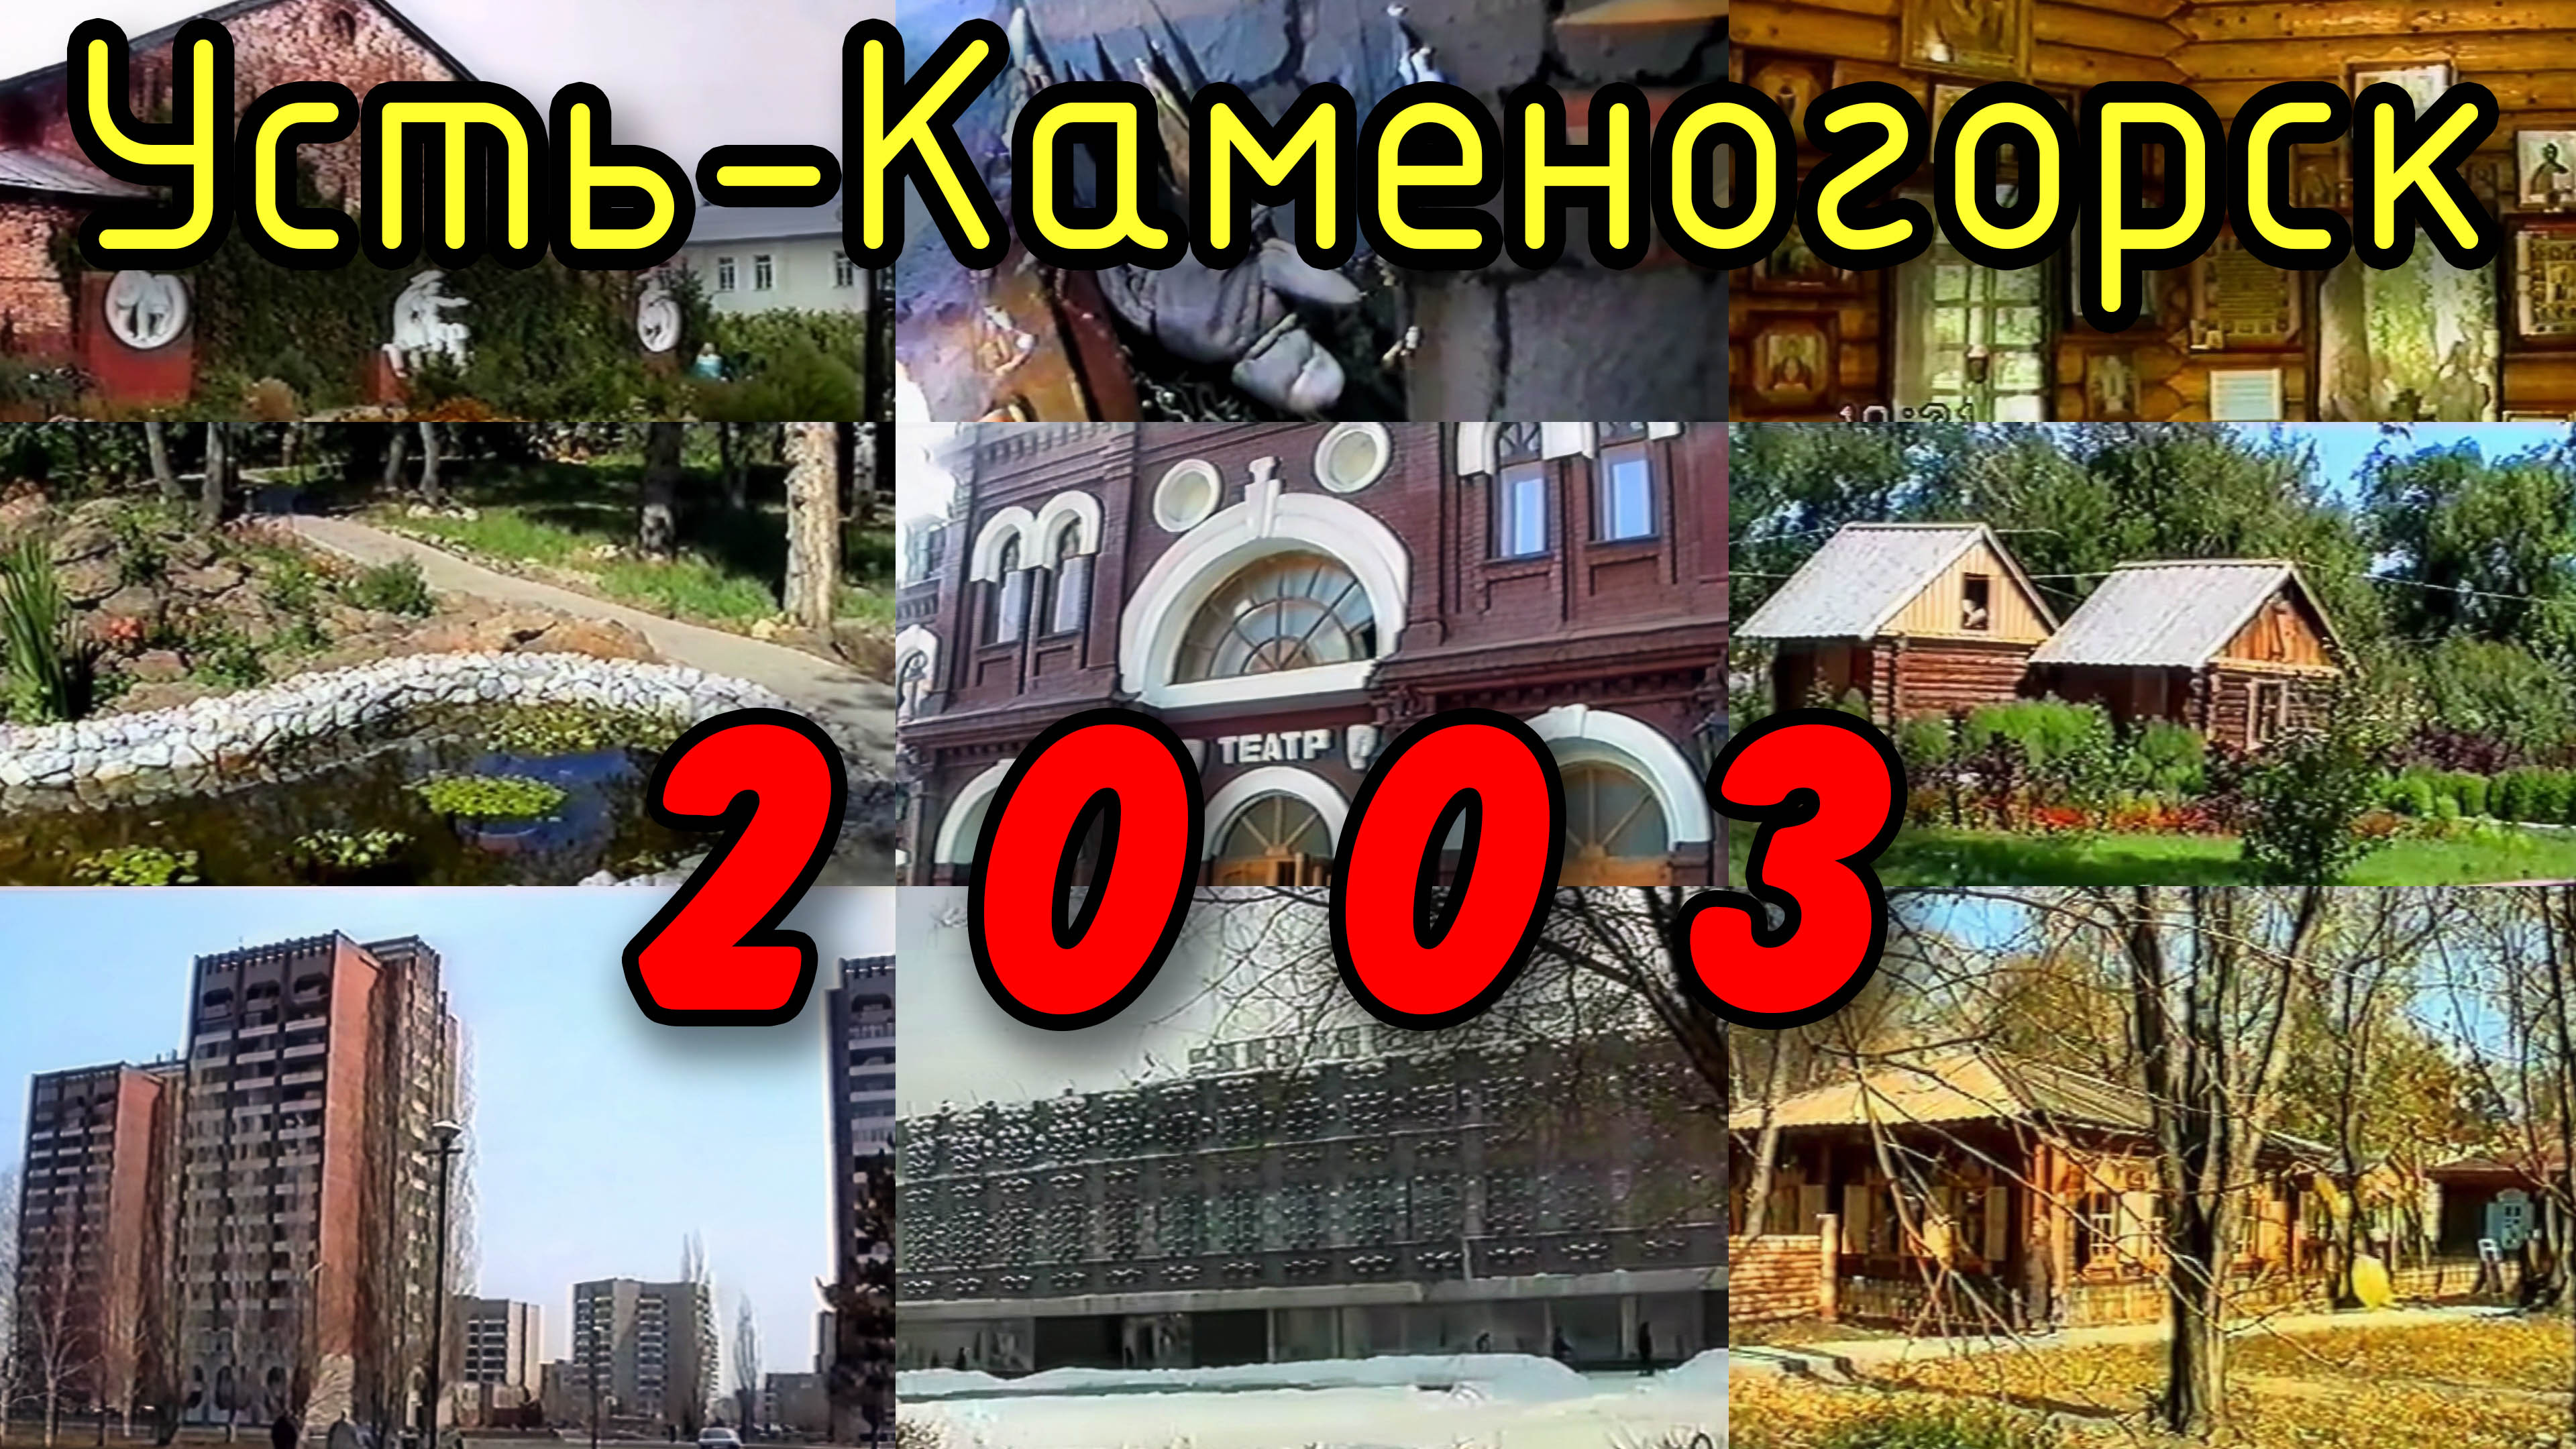 Усть-Каменогорск в 2003 году. ЦУМ, центральная площадь, Стрелка, парки Джамбула и Кайсенова (Кирова)